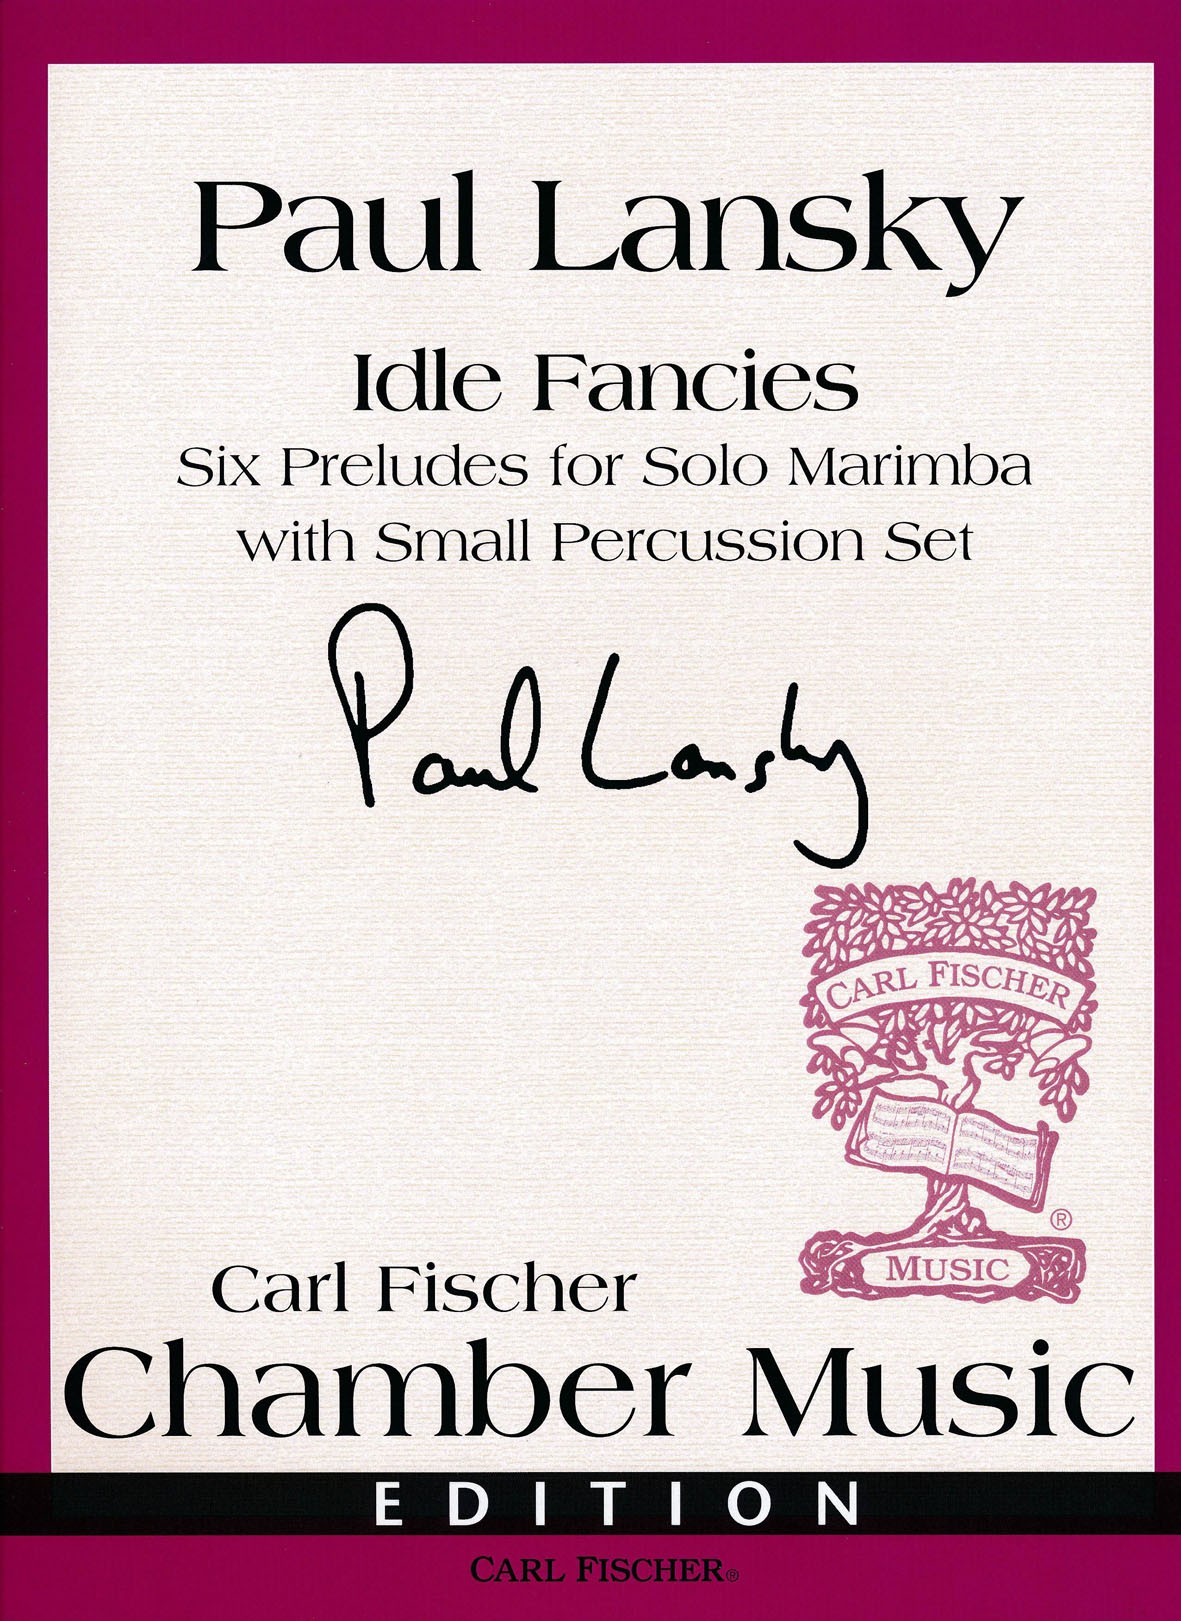 Idle Fancies by Paul Lansky